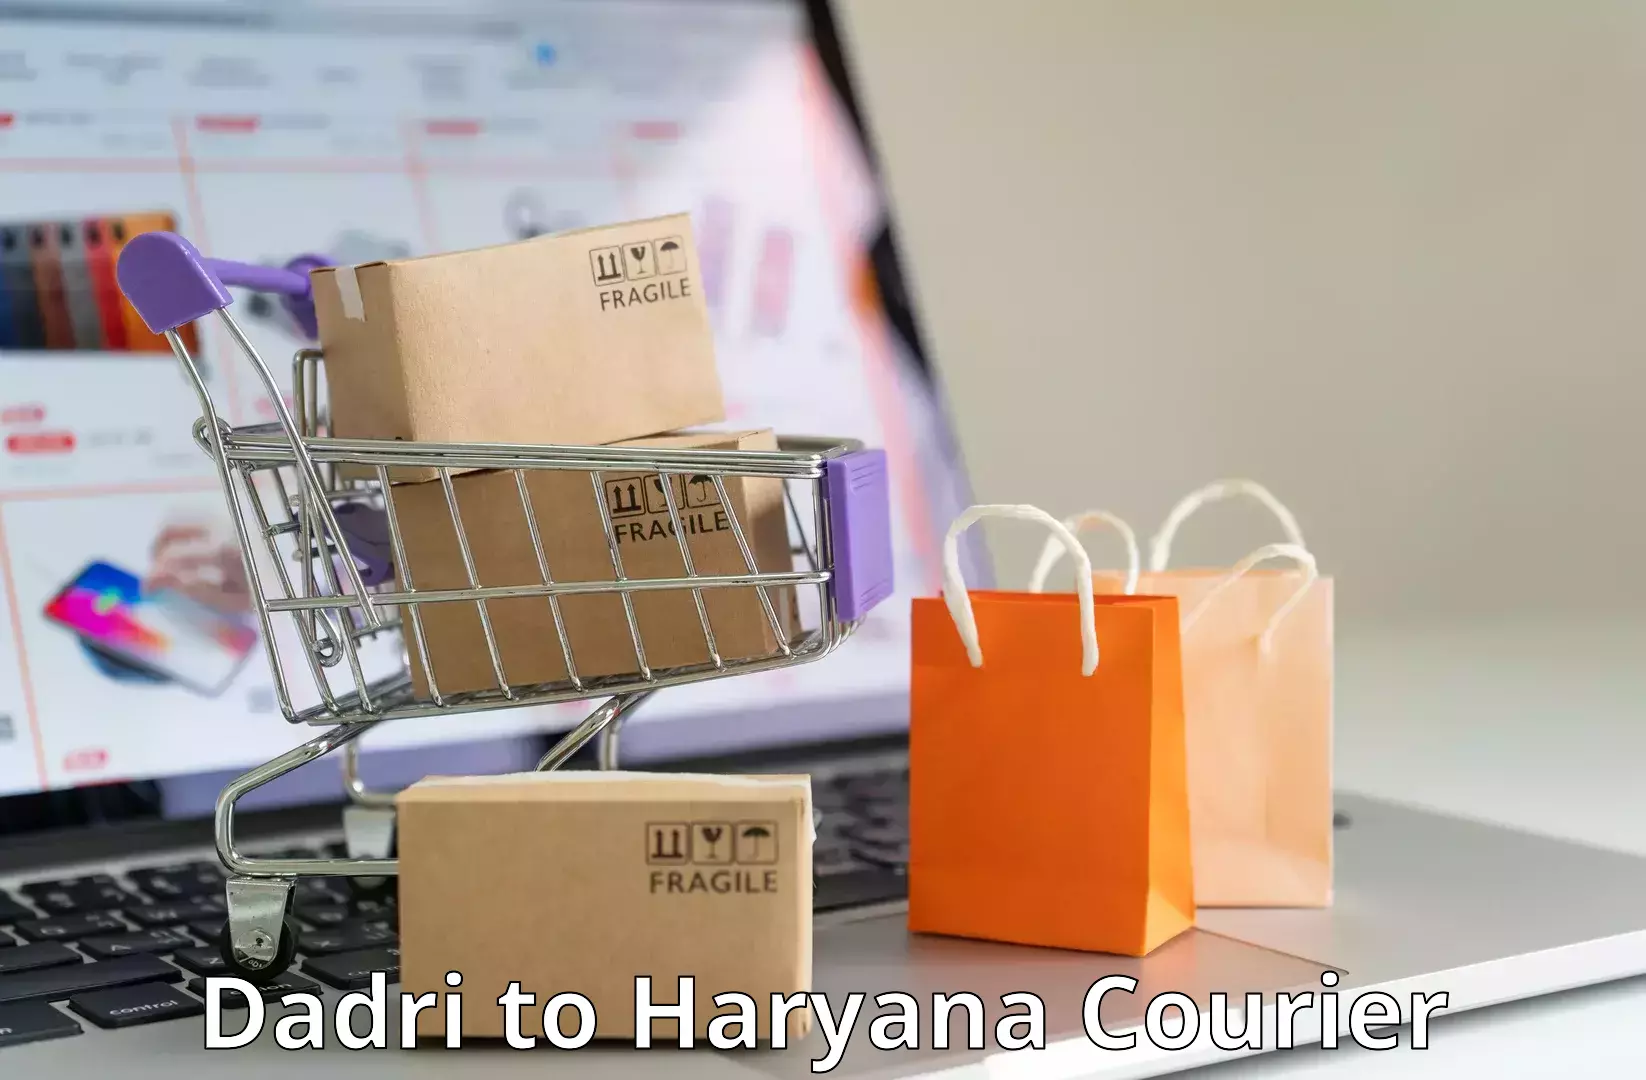 Regular parcel service Dadri to Dharuhera